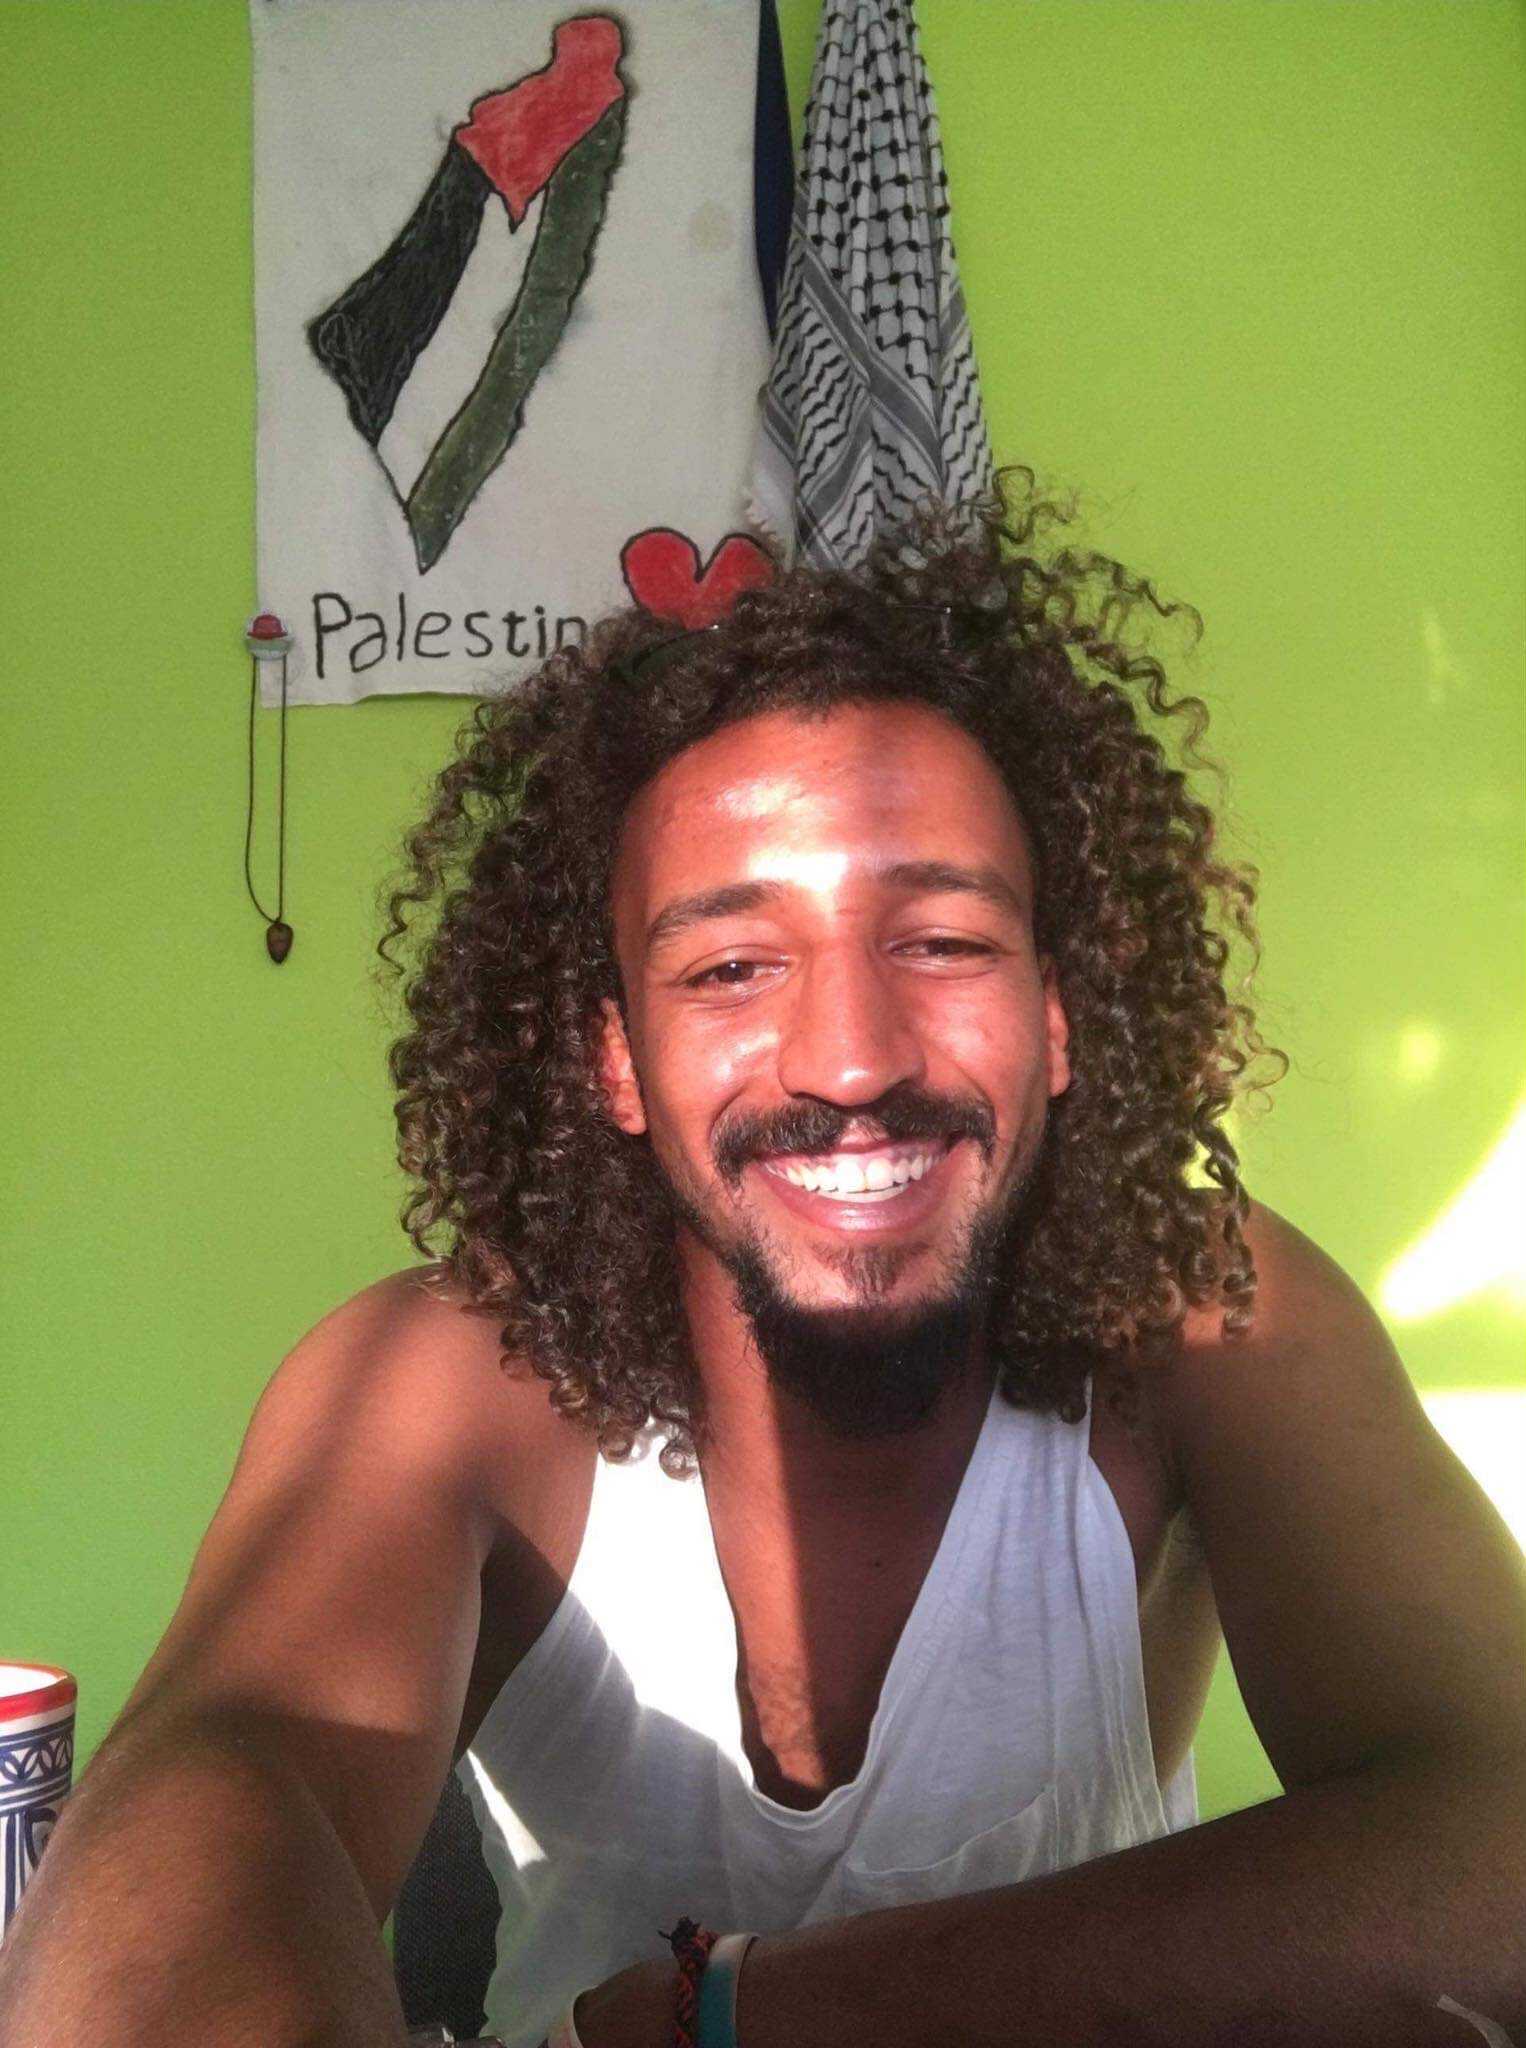 Βοήθησε τον 27χρονο Saed να φέρει γεύσεις από την Παλαιστίνη στη Σάμο